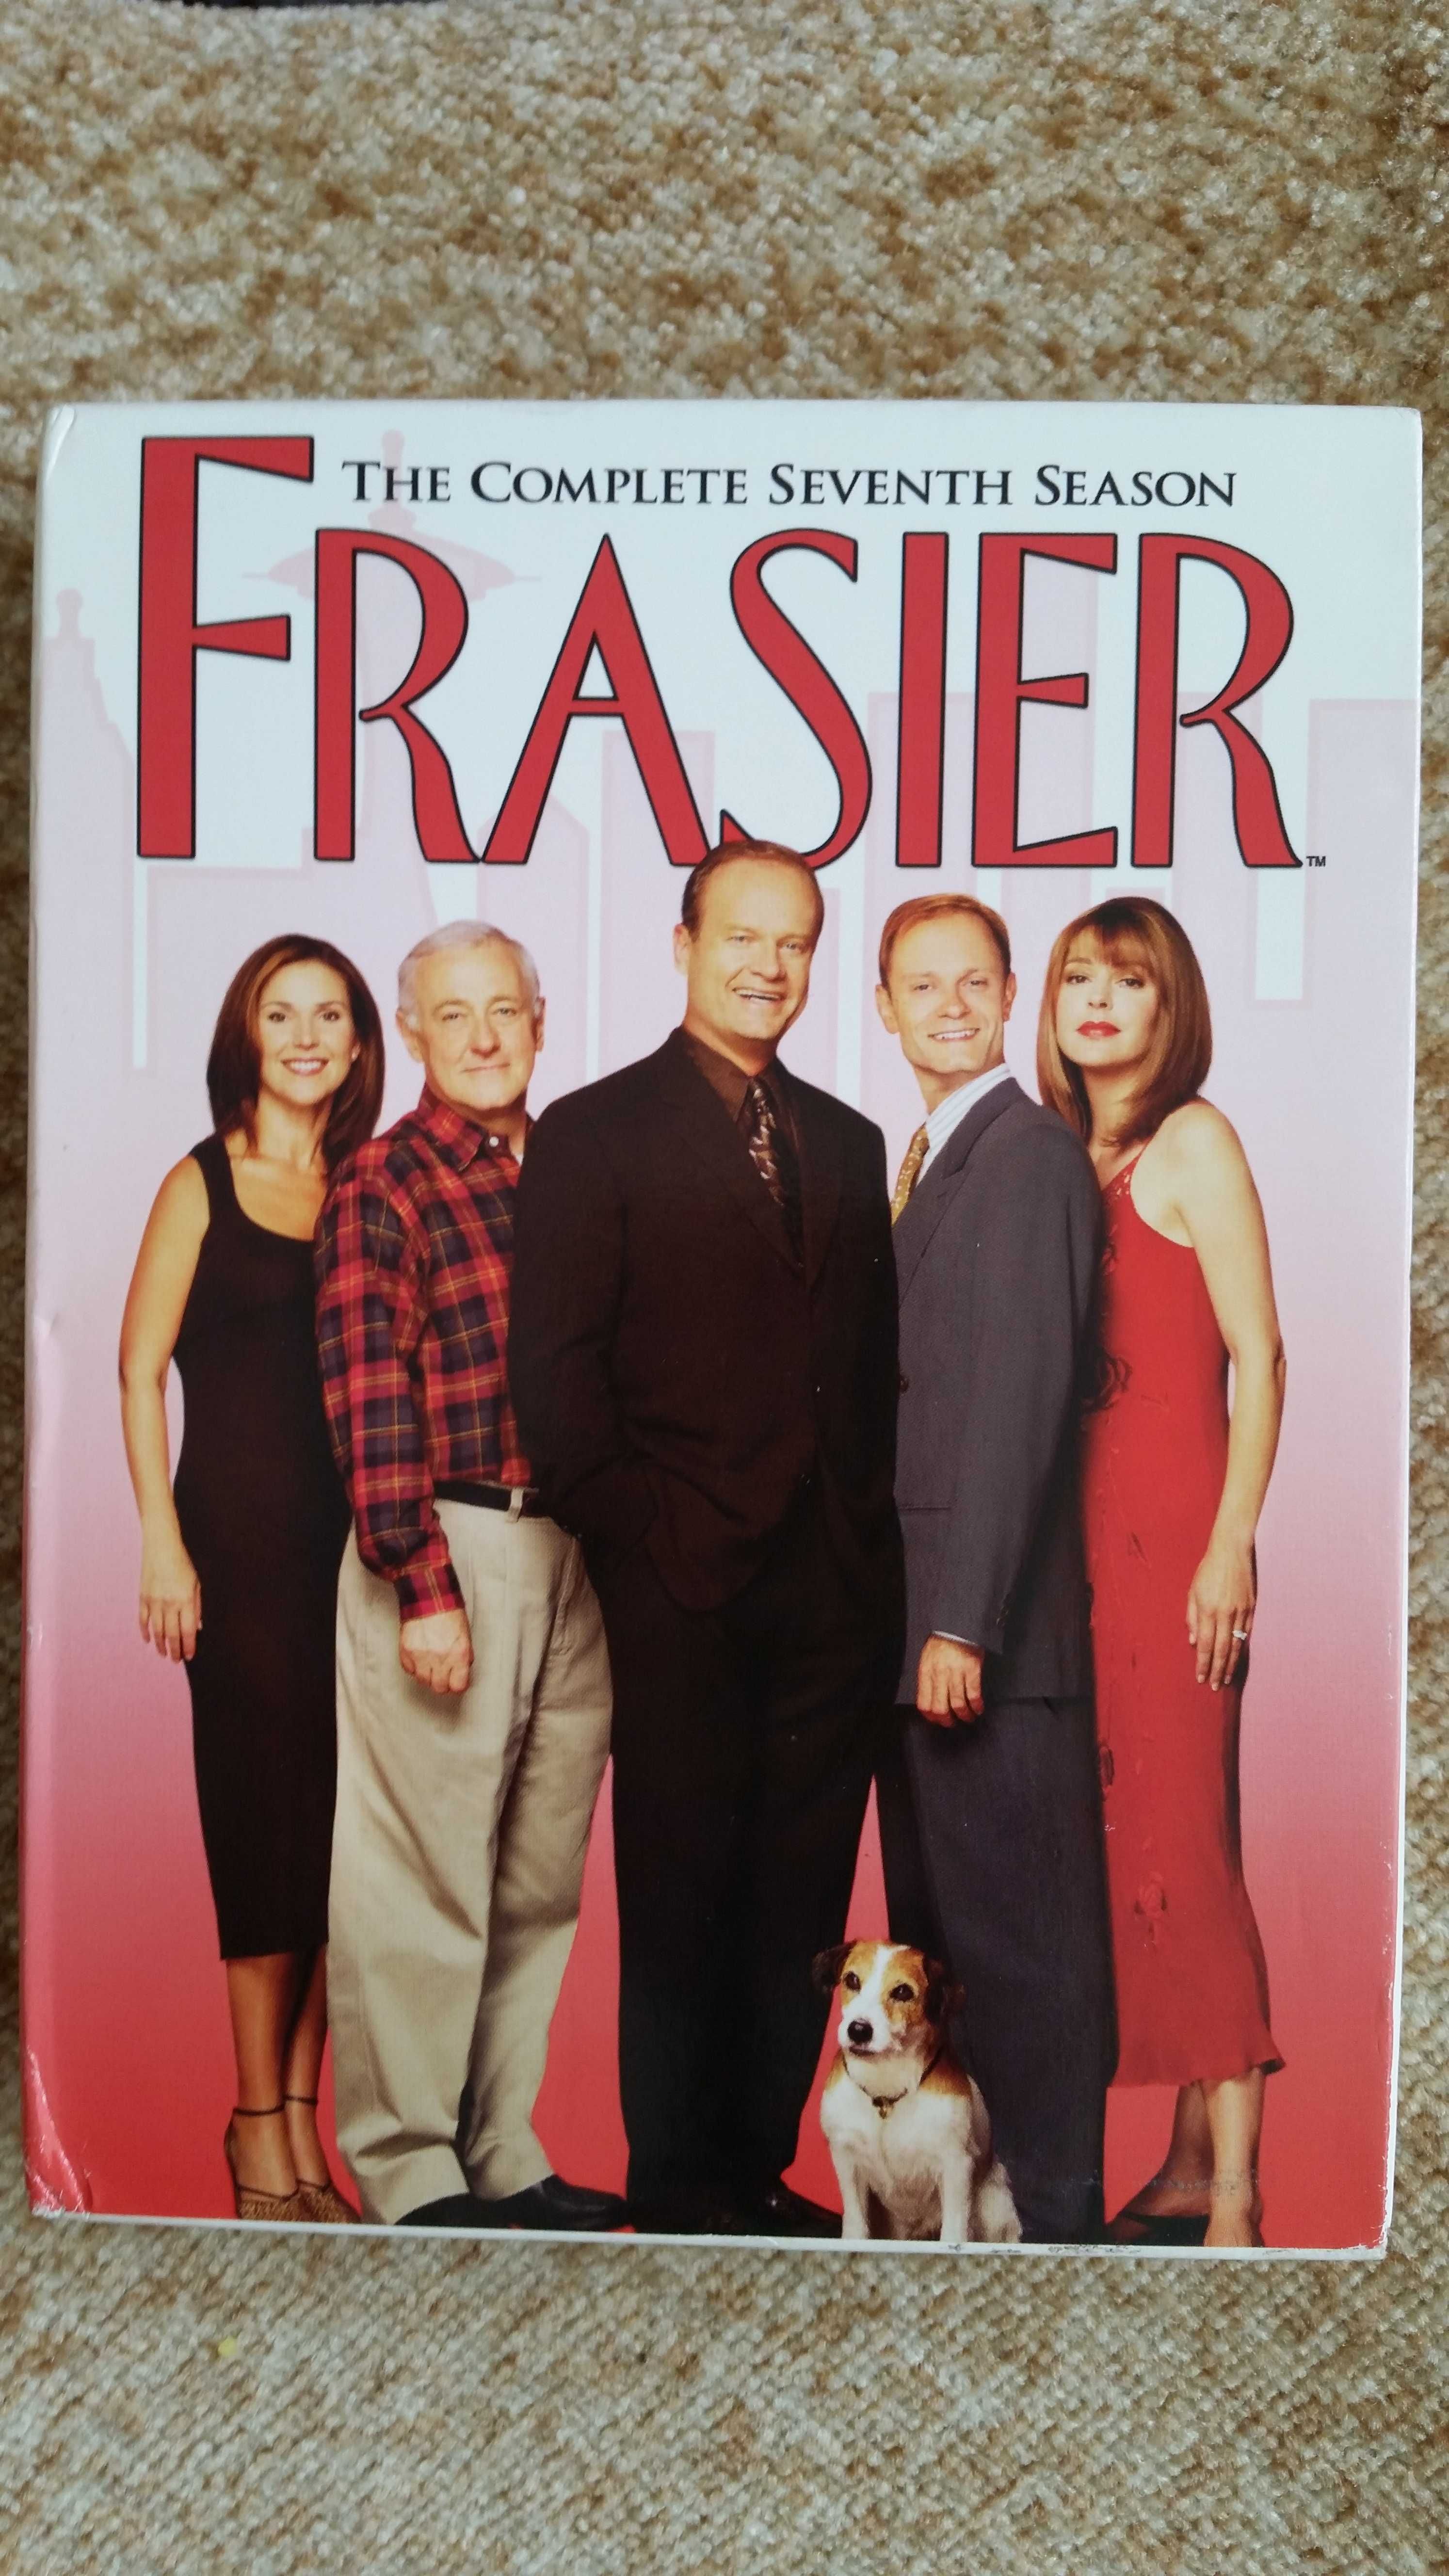 The Complete Seventh Season FRASIER - 4 DVD Box Set